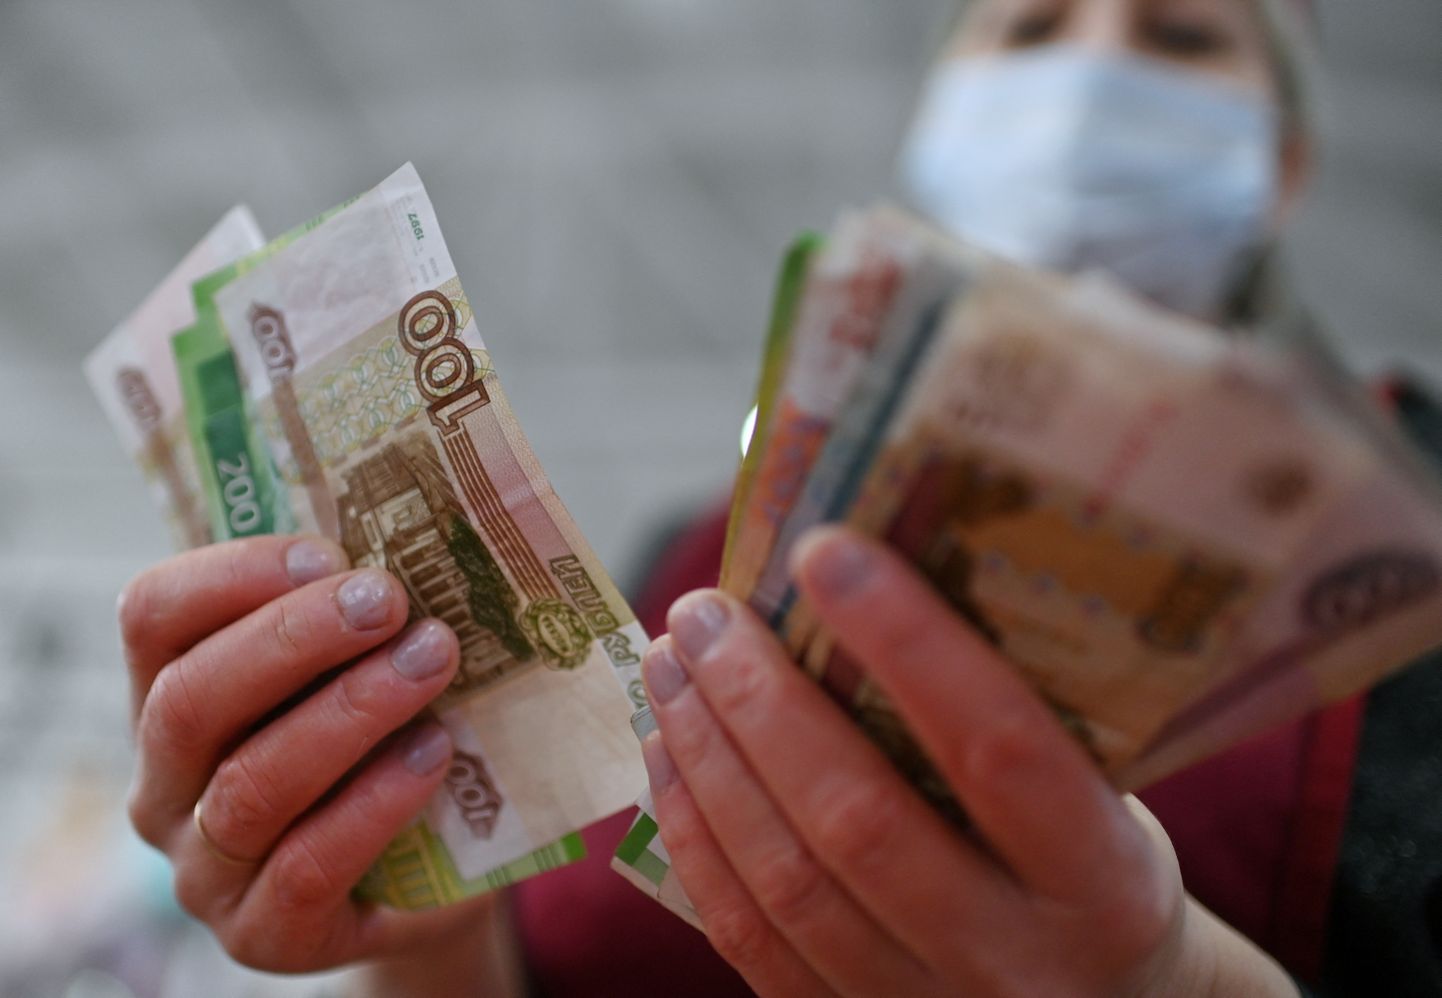 Venemaal tuleb kauba ja valuuta eest välja käia rohkem rublasid